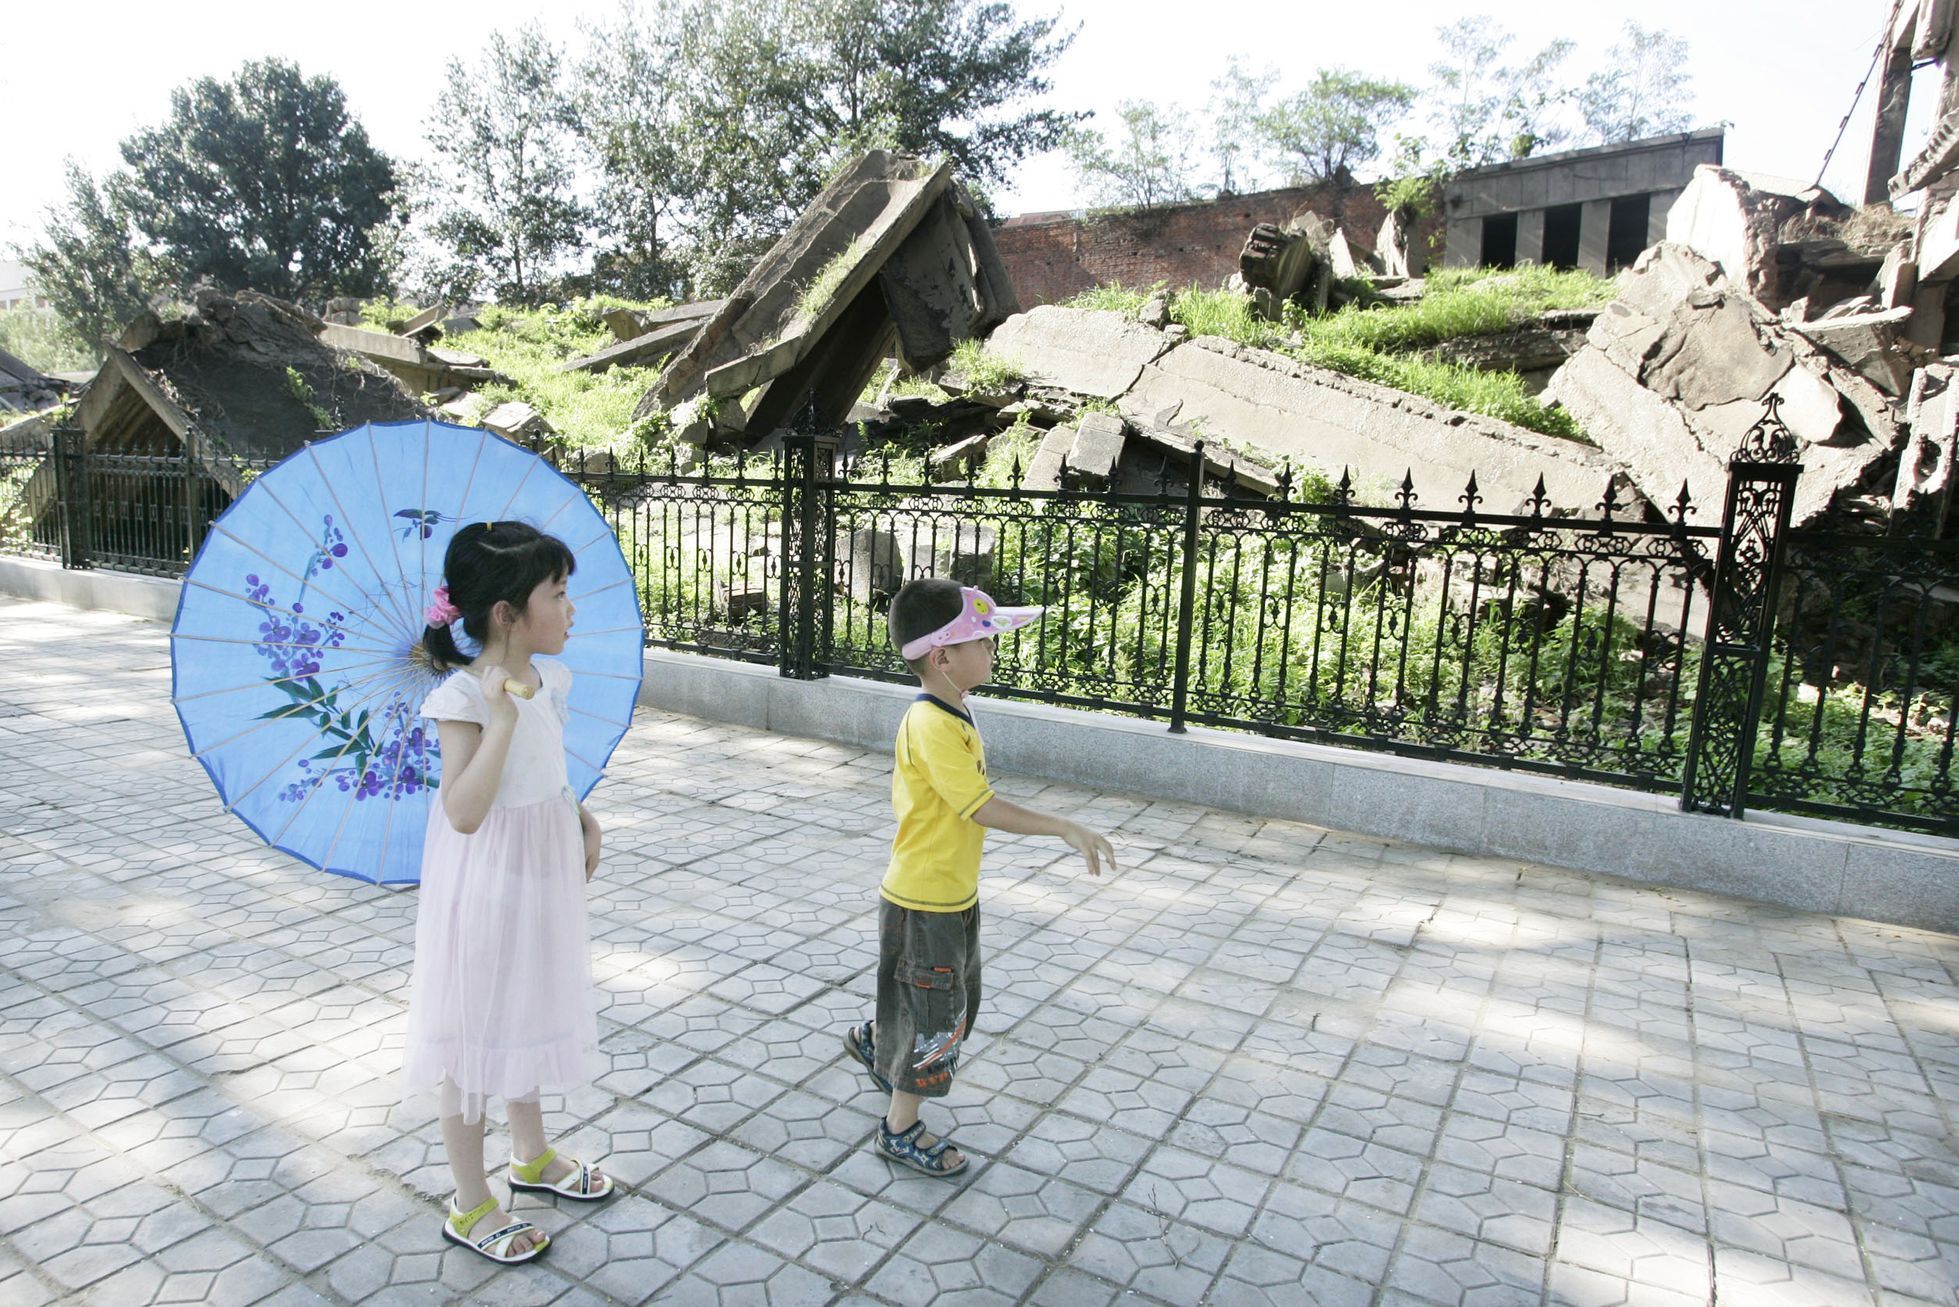 Uplynulo 45 let od čínského zemětřesení, které bylo tím nejhorším ve 20. století / Zemětřesení v Tchang-šanu / Tchangšanské zemětřesení